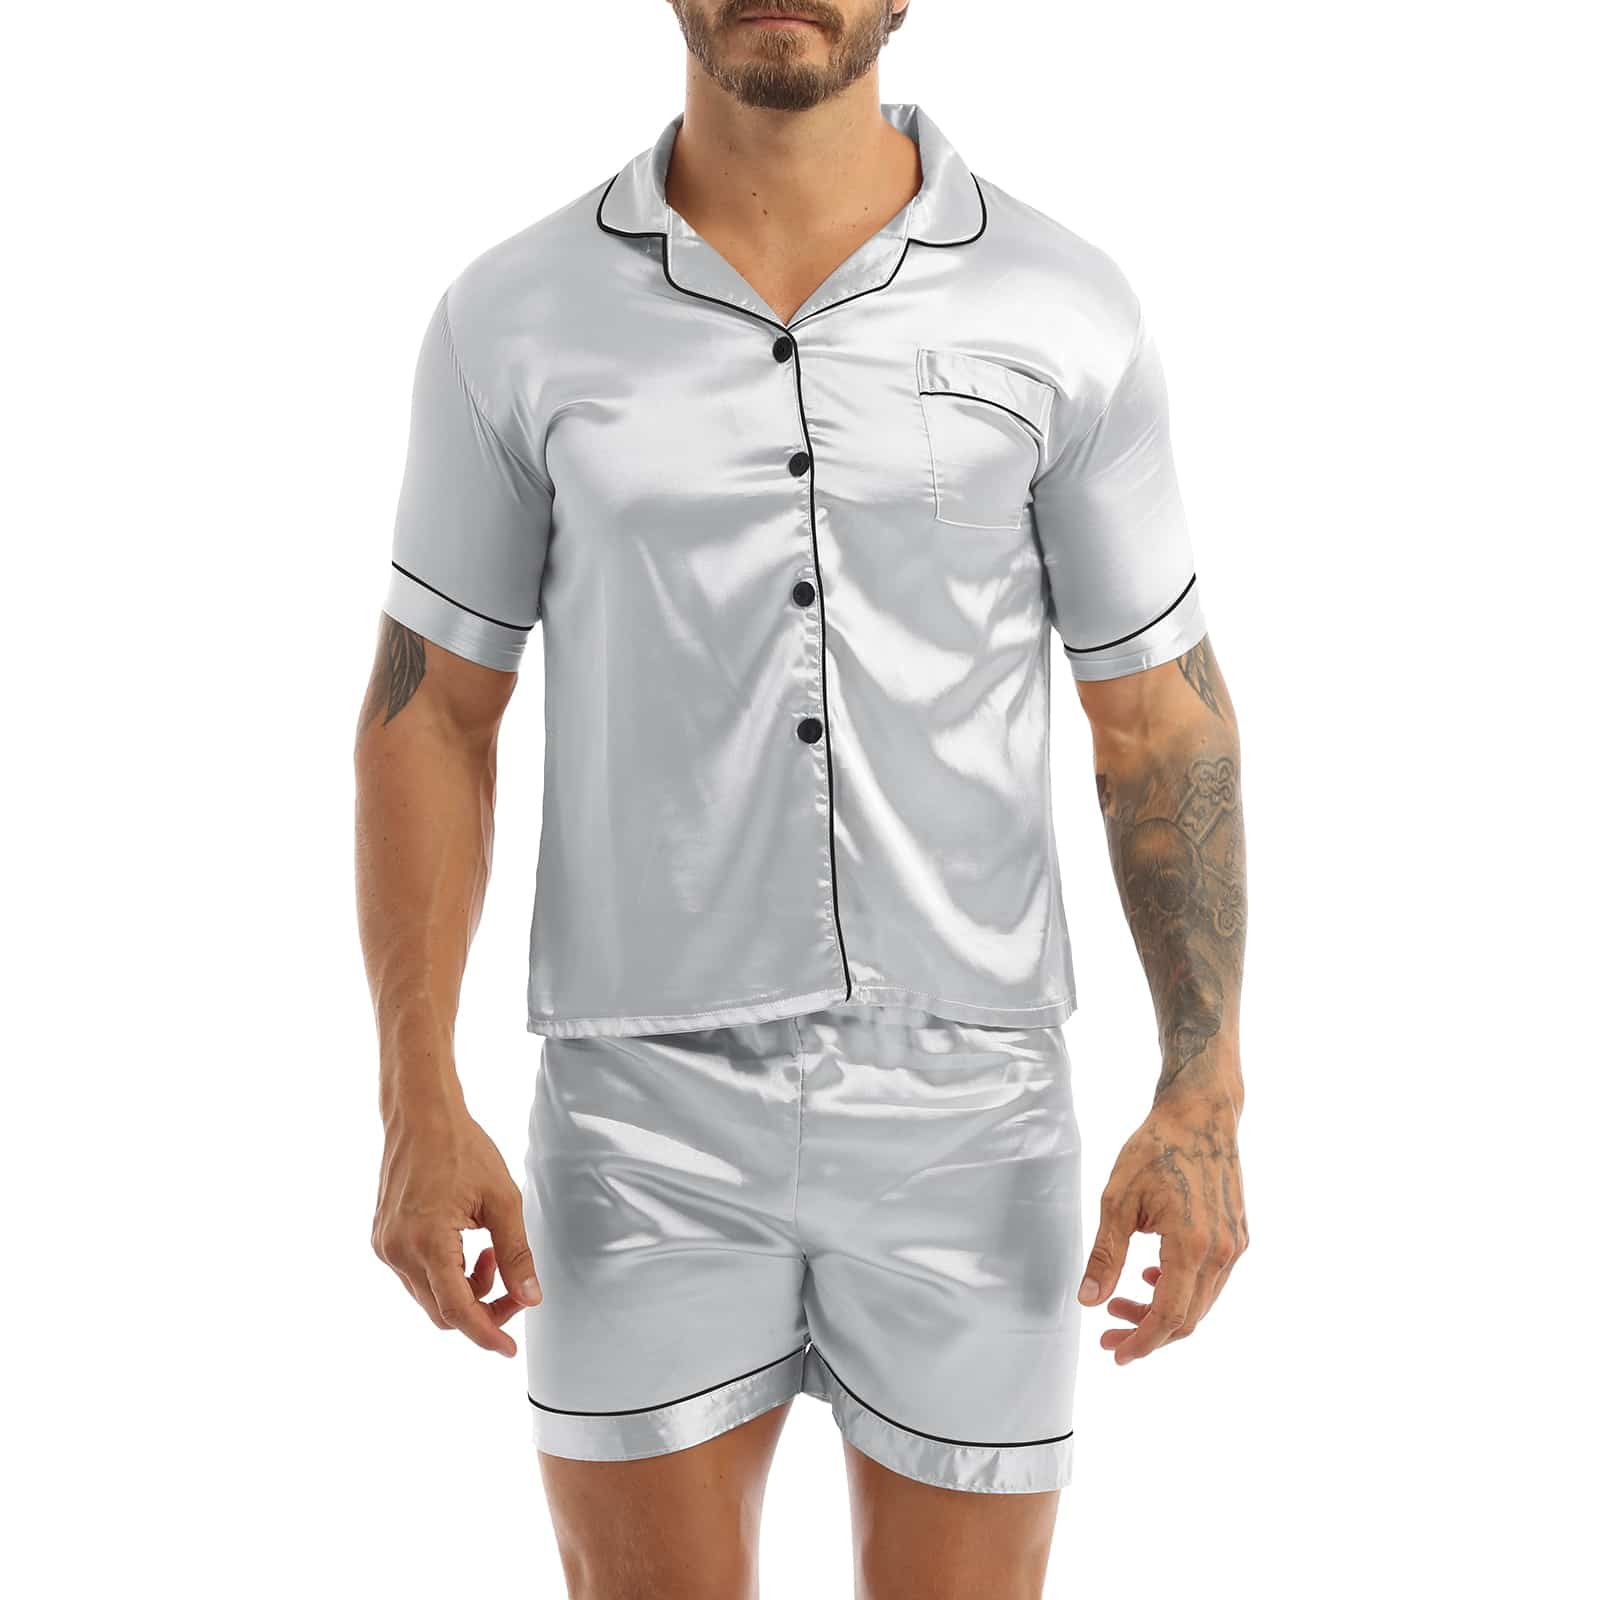 Pijama de satén gris llevado por un hombre con un tatuaje en el brazo izquierdo, el pijama consiste en unos pantalones cortos y una camisa con botones en la parte delantera